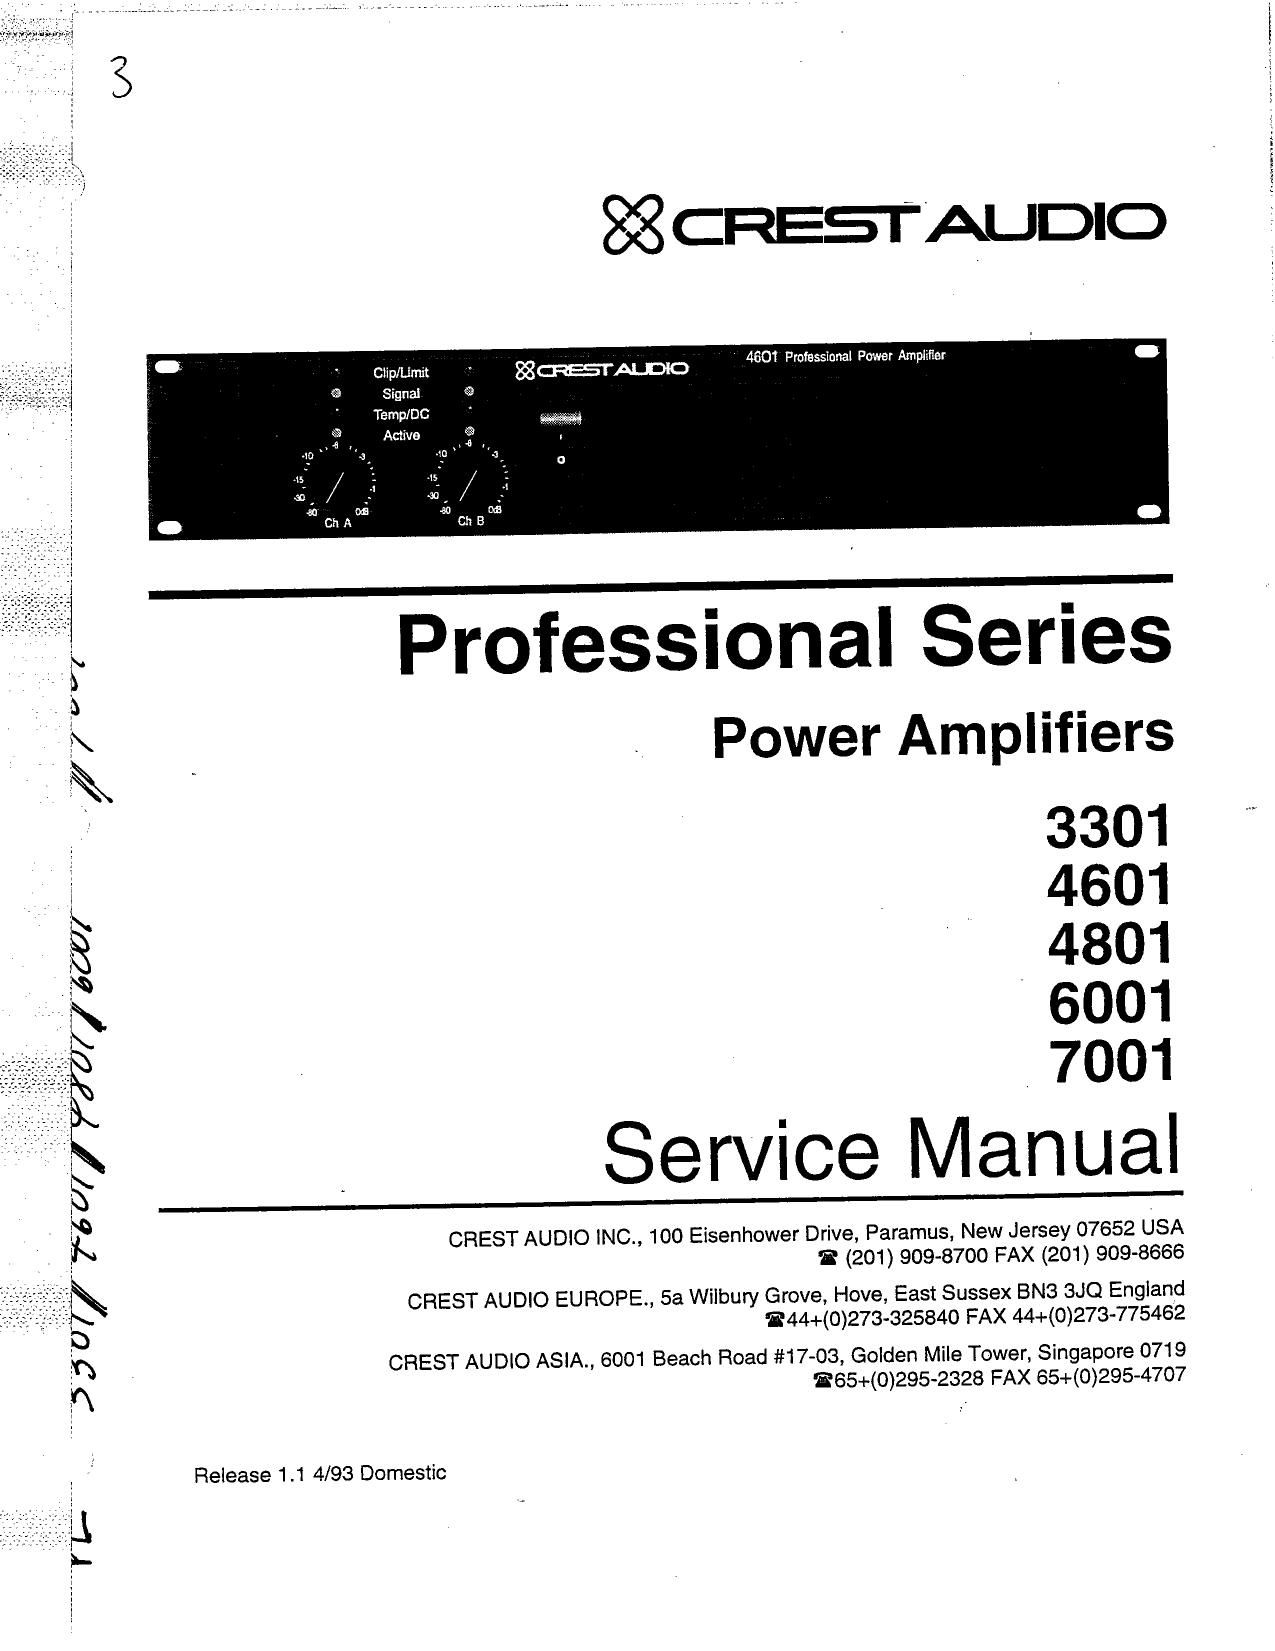 Crest Audio 4801 Service Manual